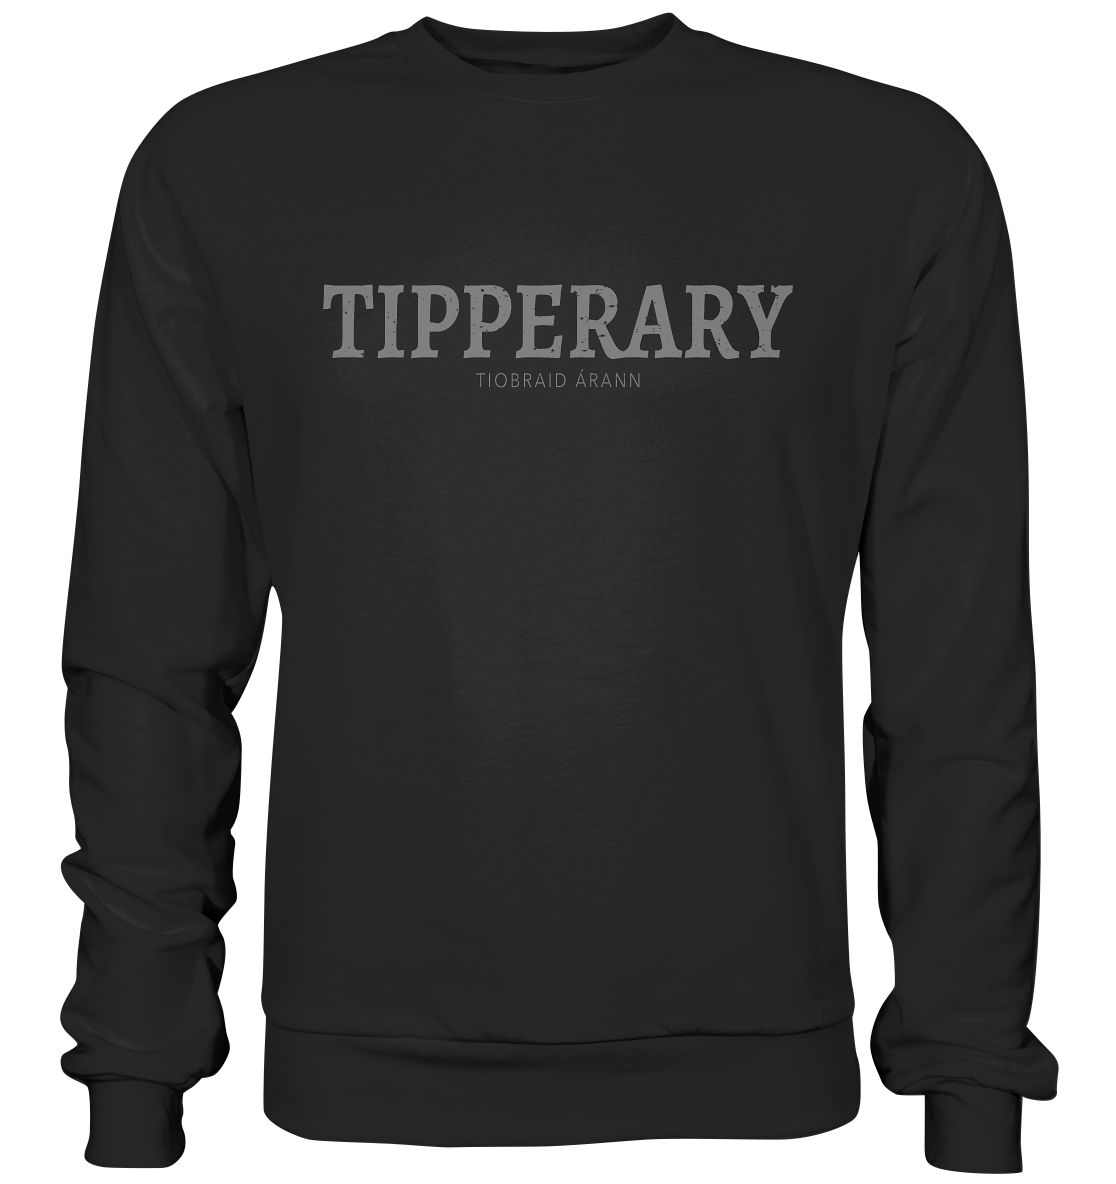 Cities Of Ireland "Tipperary" - Premium Sweatshirt